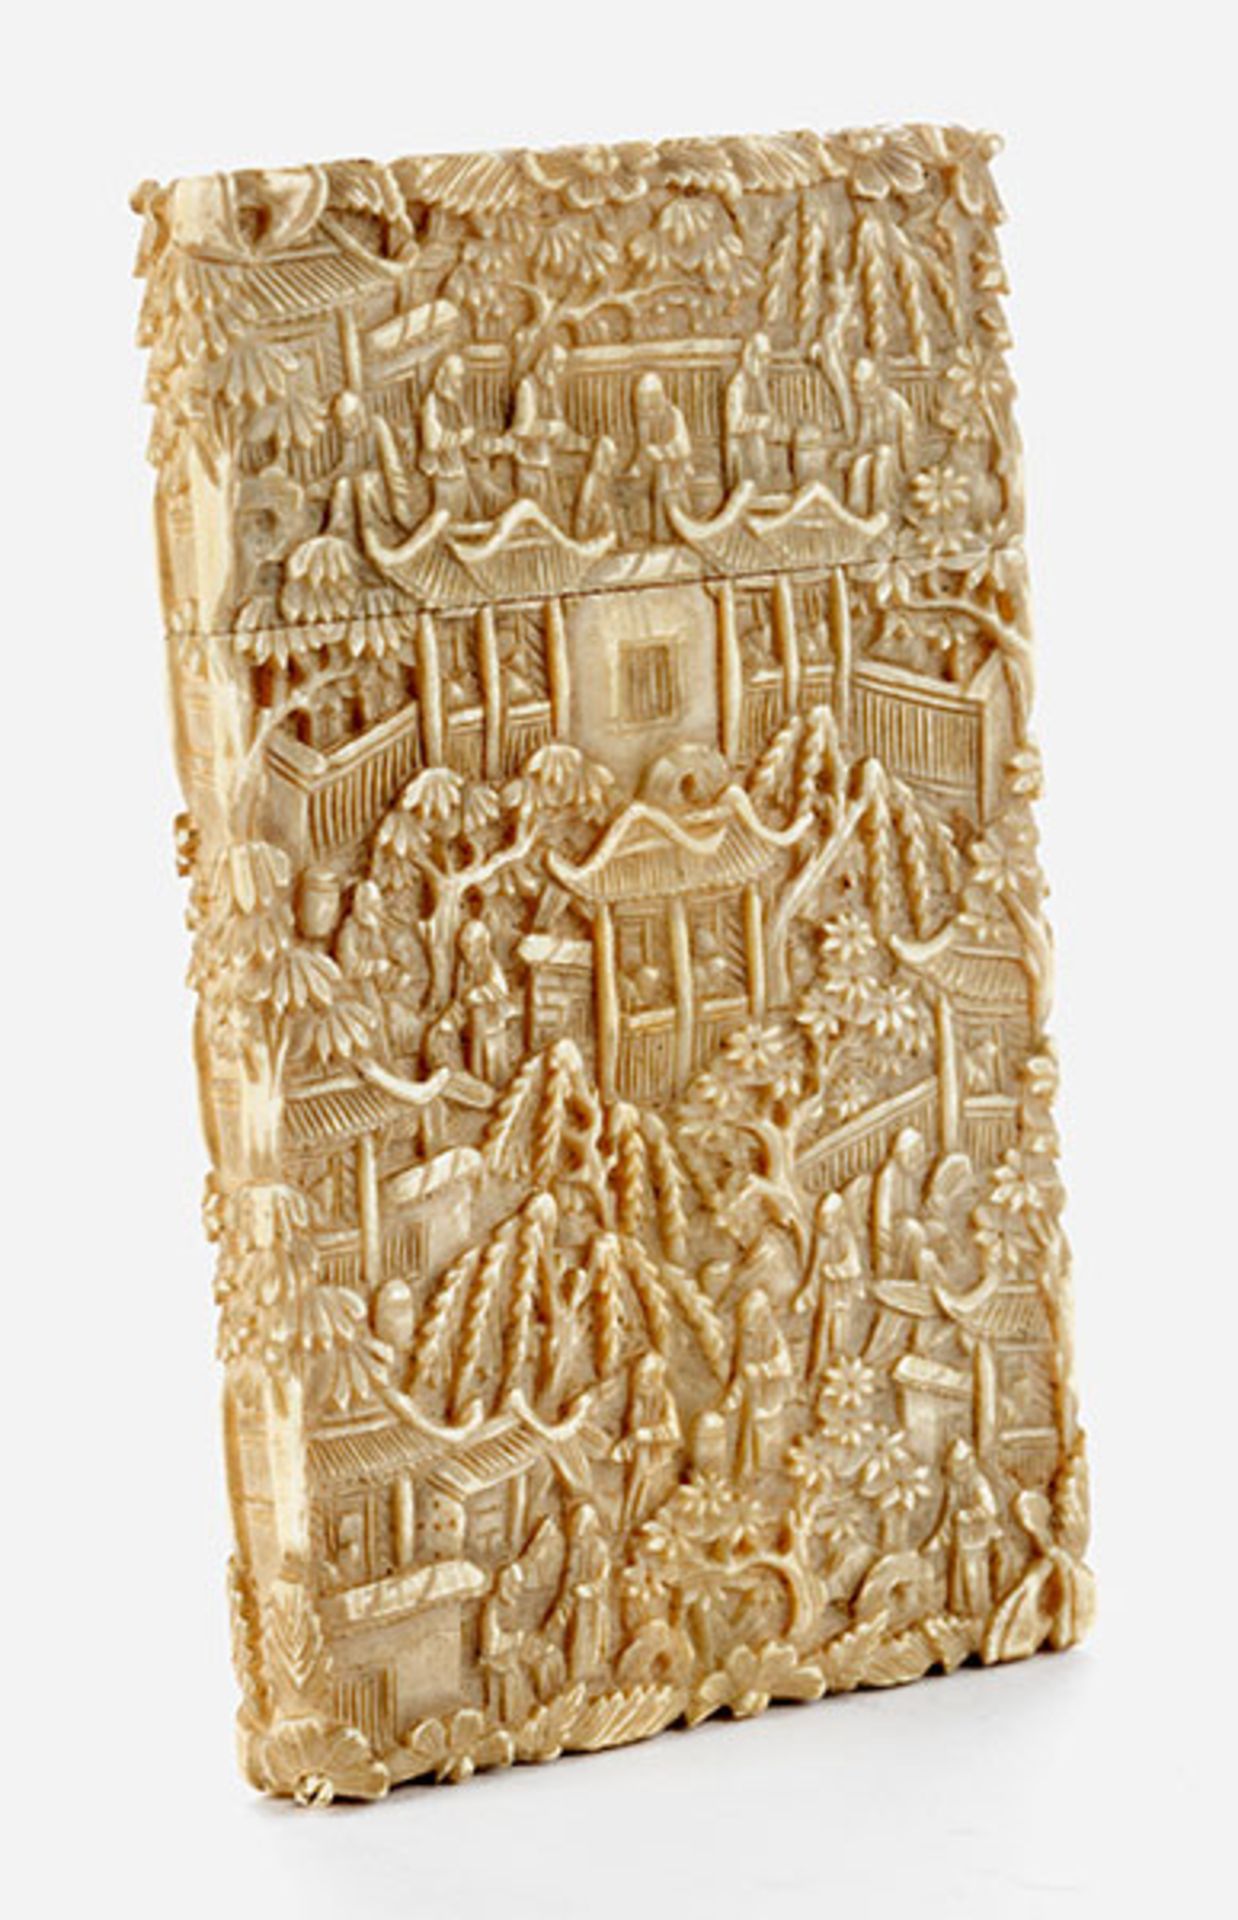 Fein im Relief gearbeitetes Elfenbeinkartenetui 11 x 6,5 cm. China, 19. Jahrhundert. Hochrechteckig,